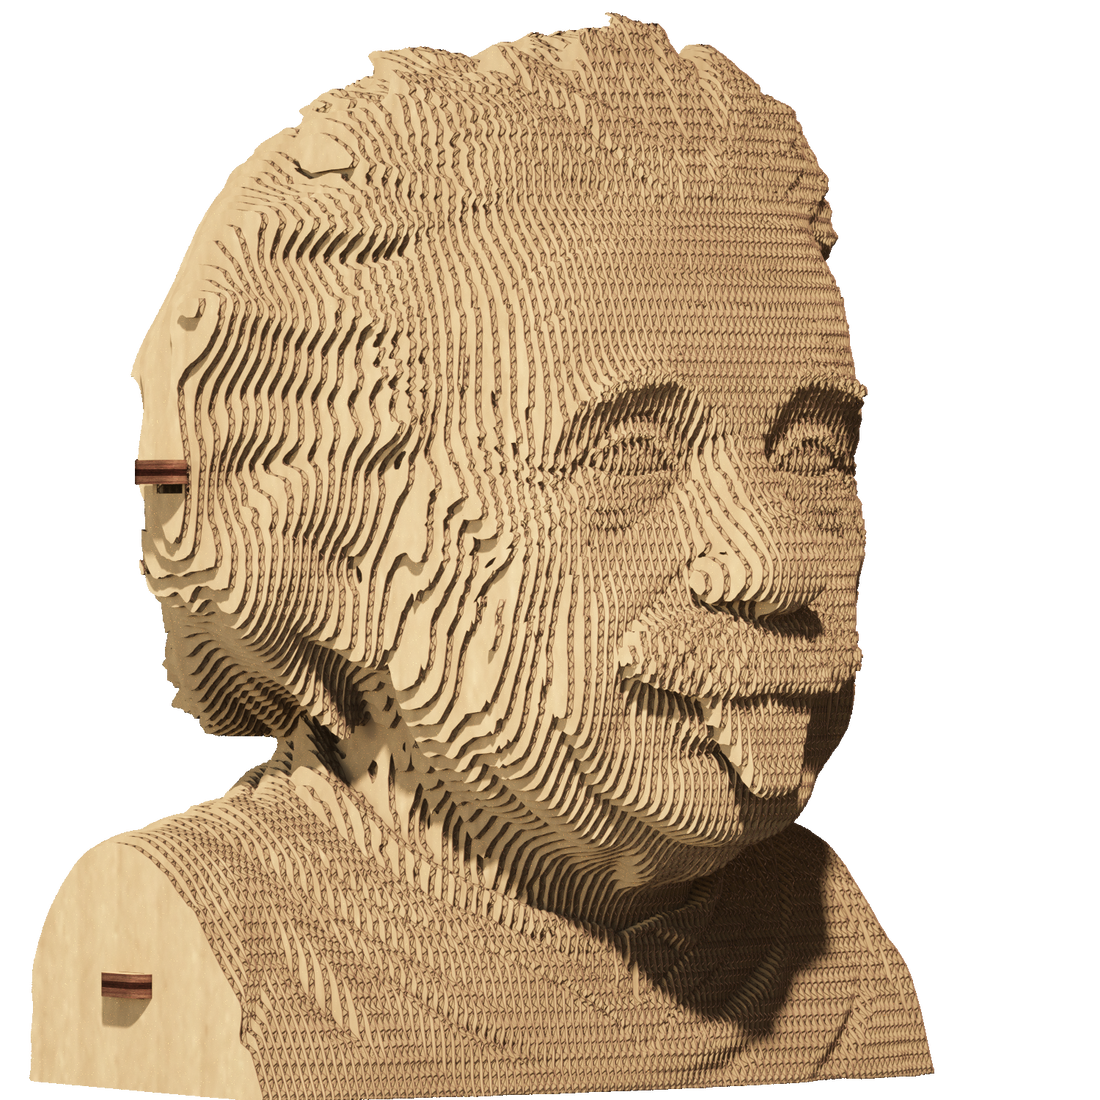 ALBERT EINSTEIN 3D Puzzle by Cartonic